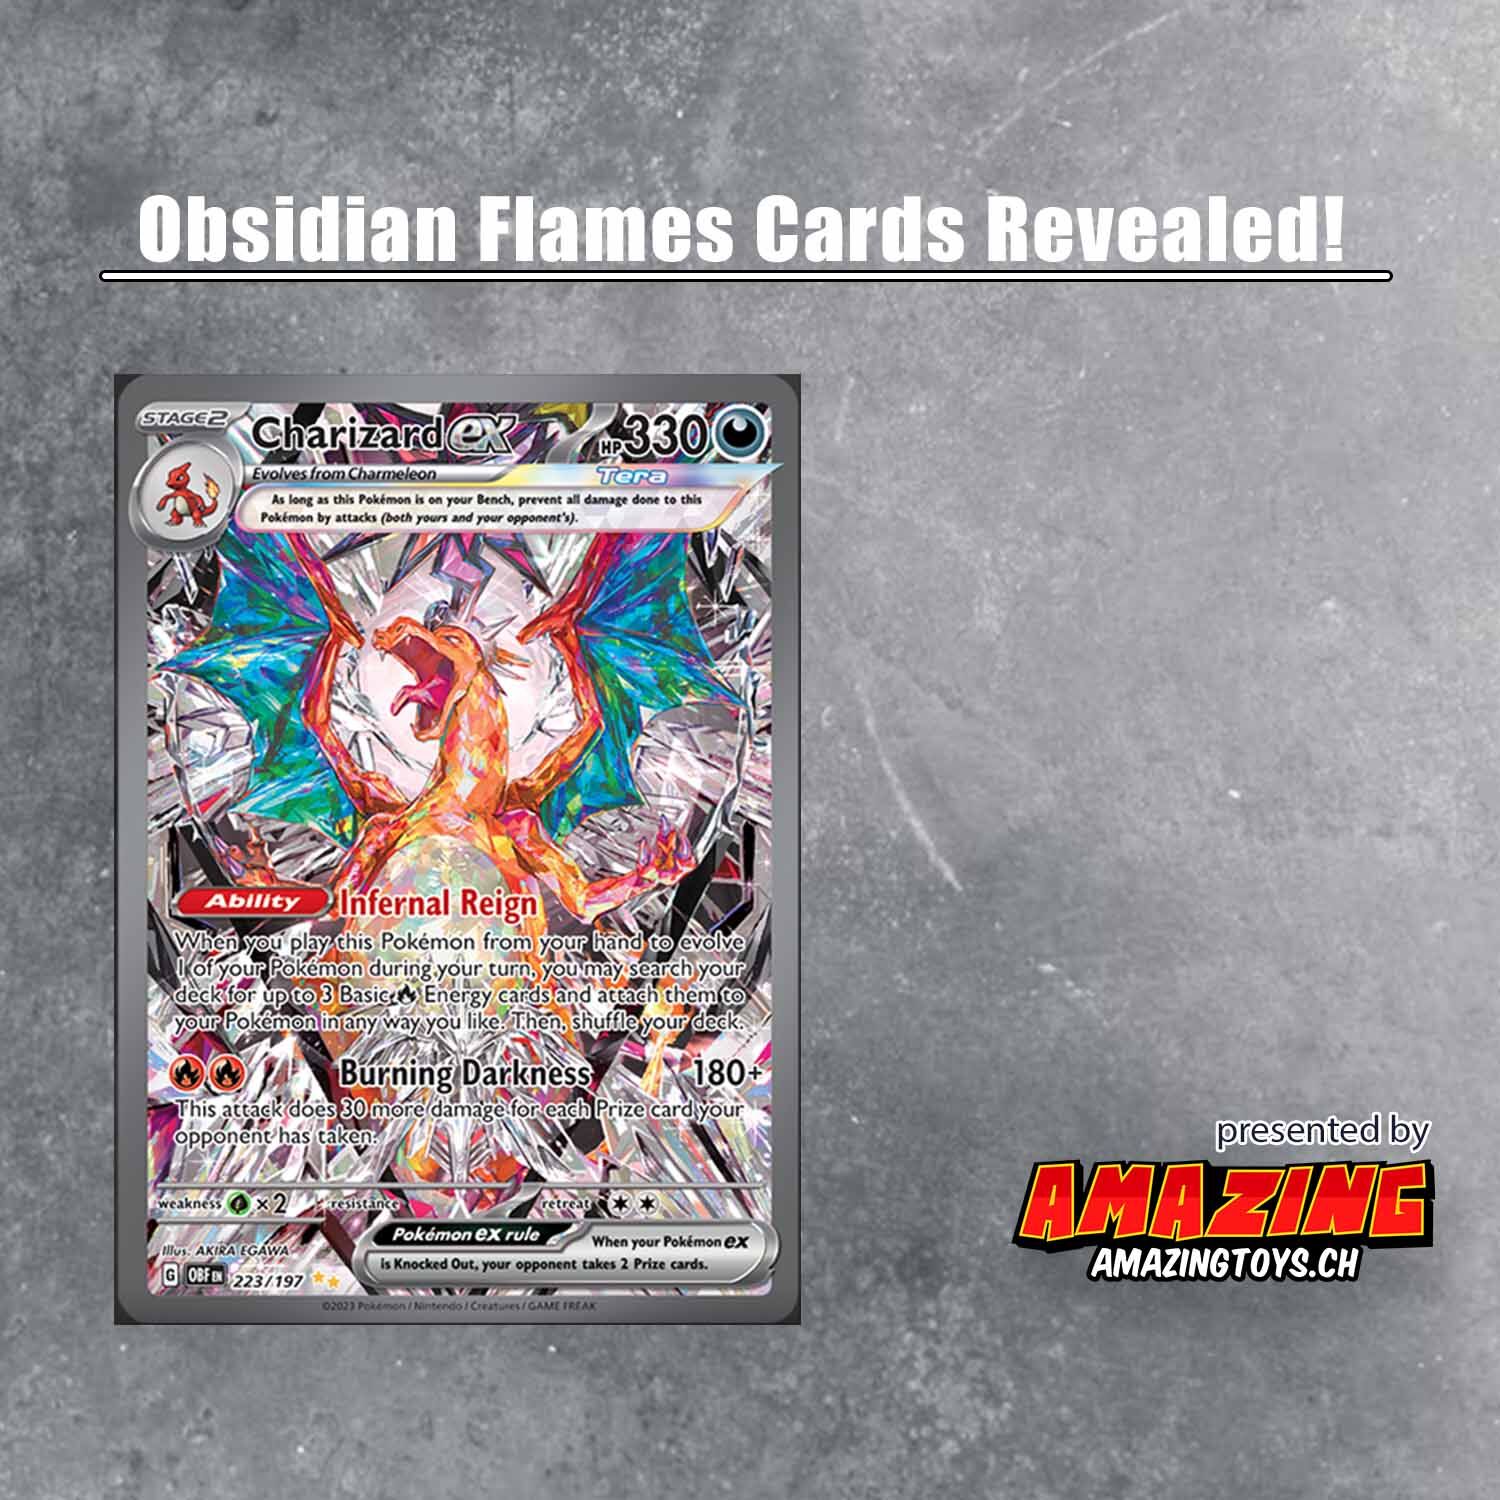 Charizard ex Special Illustration Rare und weitere „Obsidian Flames“-Karten enthüllt!